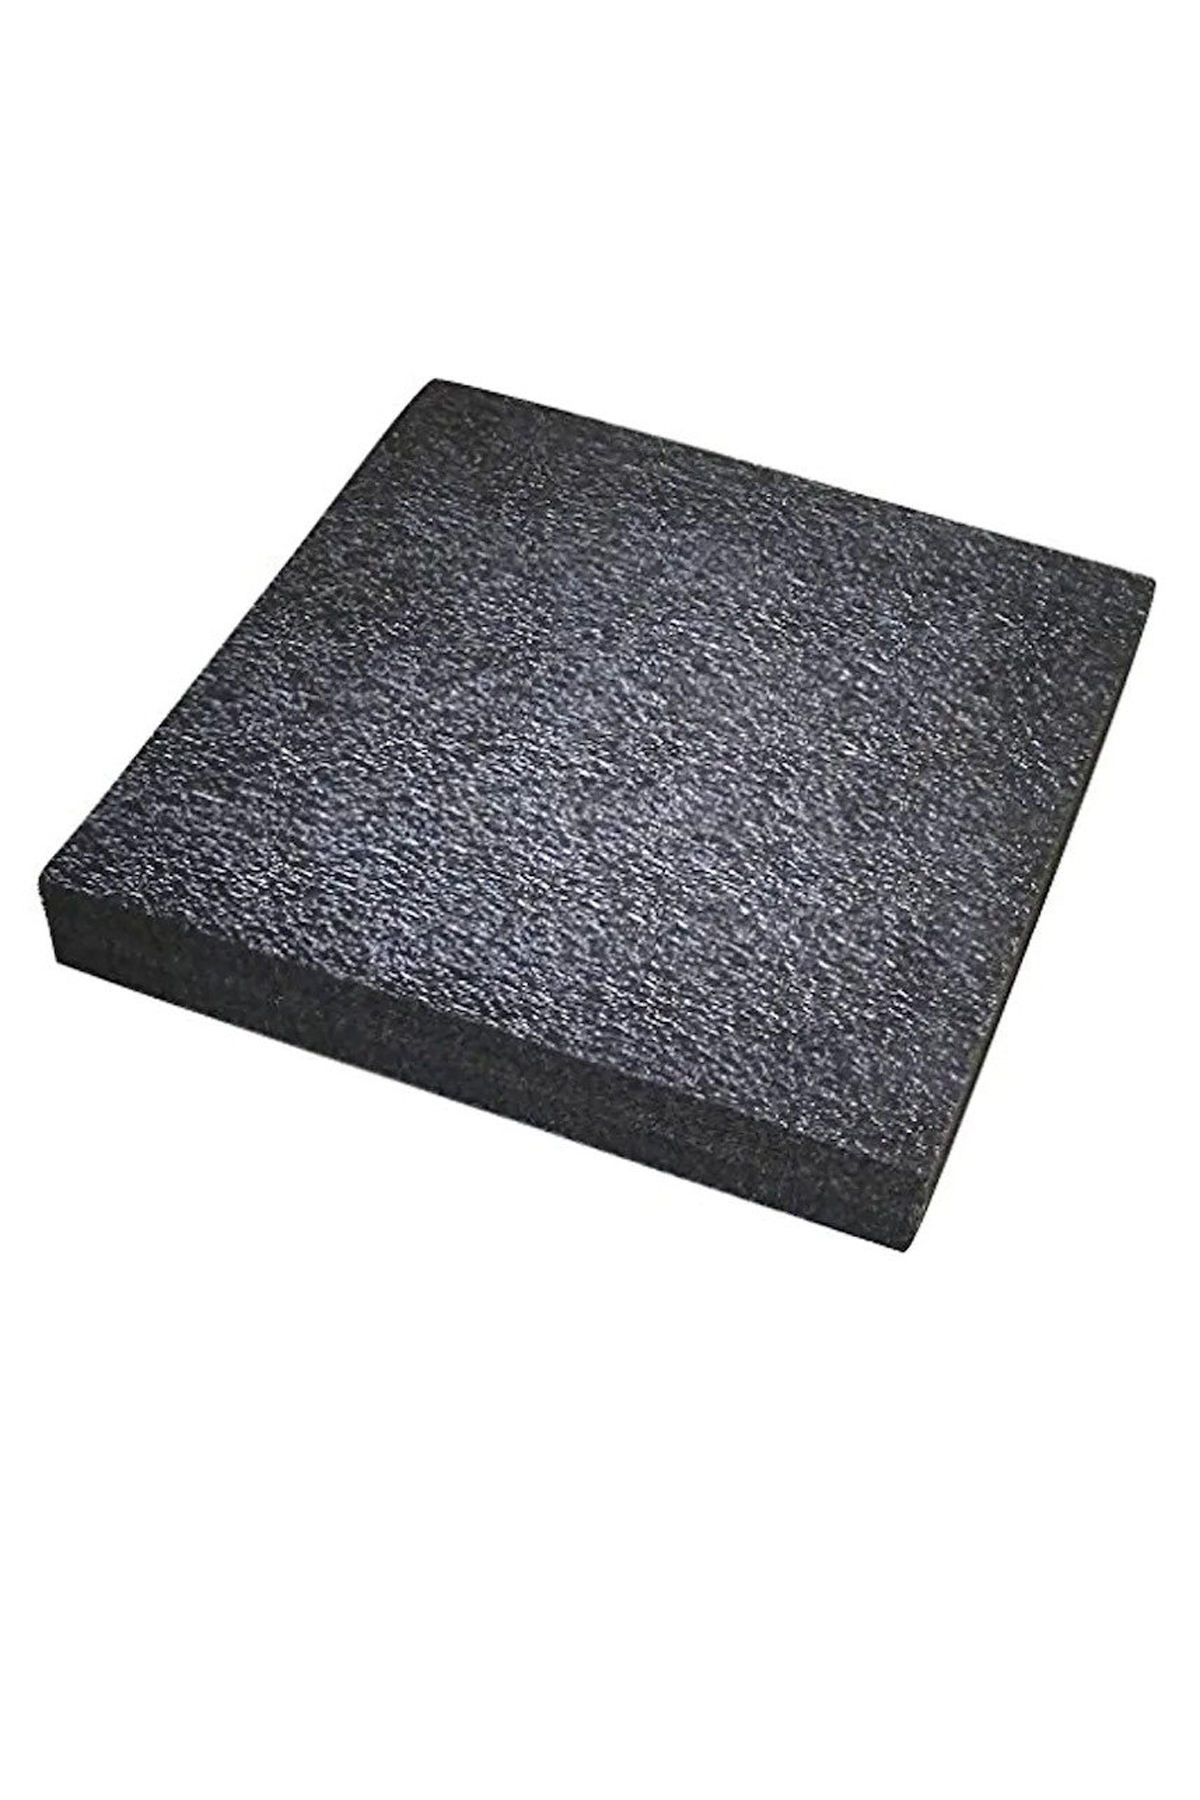 5S Köpüğü Siyah Plaka (100x100cm)